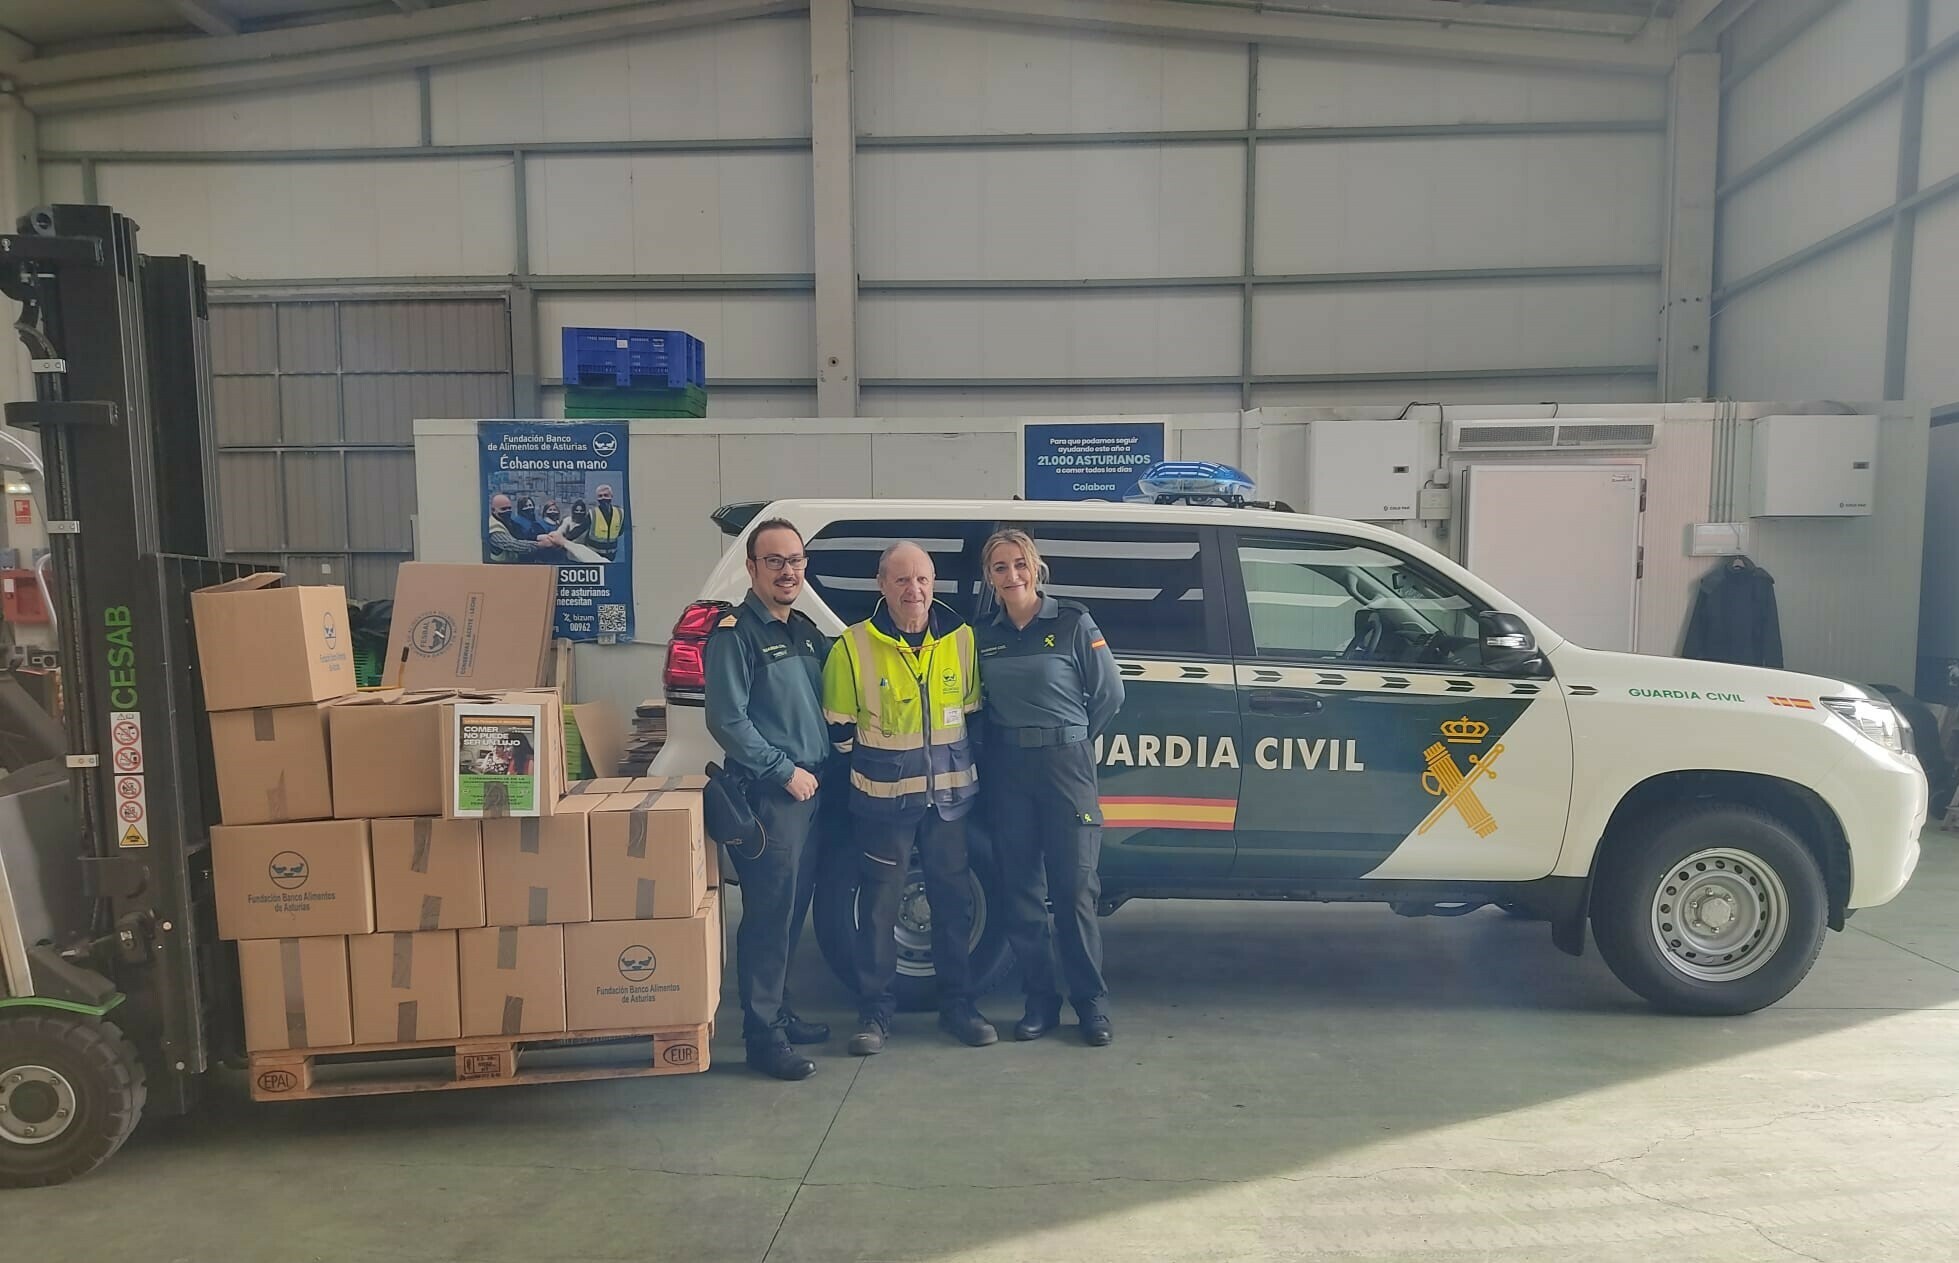 La Comandancia de la Guardia Civil de Oviedo dona 250 kilogramos de alimentos no perecederos a la Fundación Banco de Alimentos de Asturias.